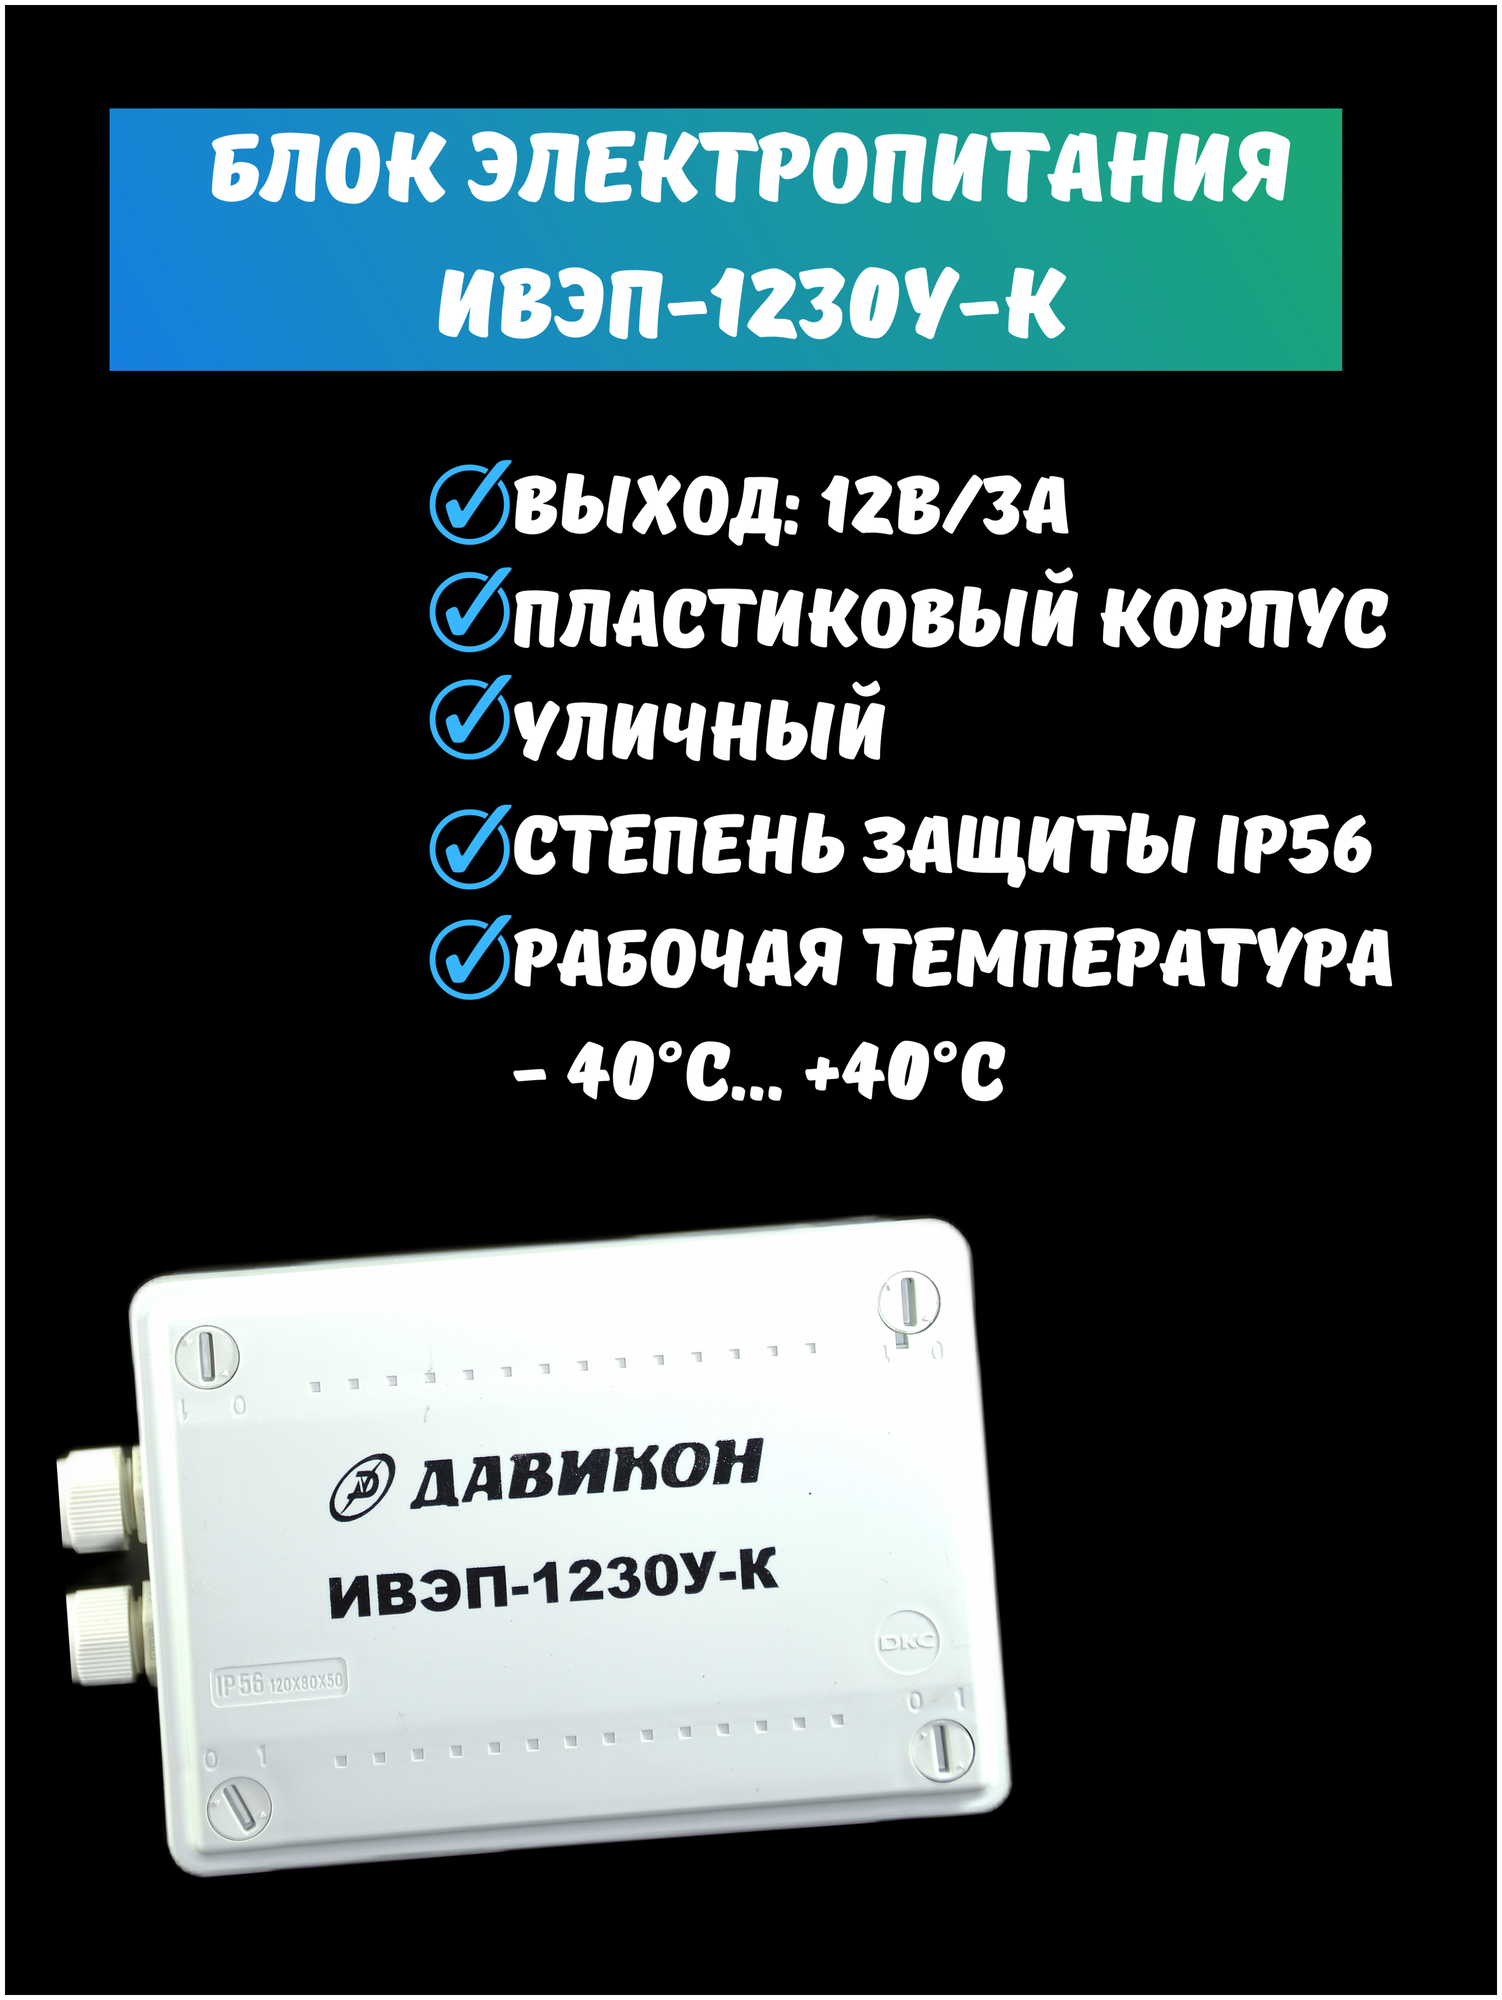 Комплект домофона с вызывной панелью KubVision 95712FH+94201 WiFi с электромеханическим замком, видеодомофон вызывная панель, для дома - фотография № 5